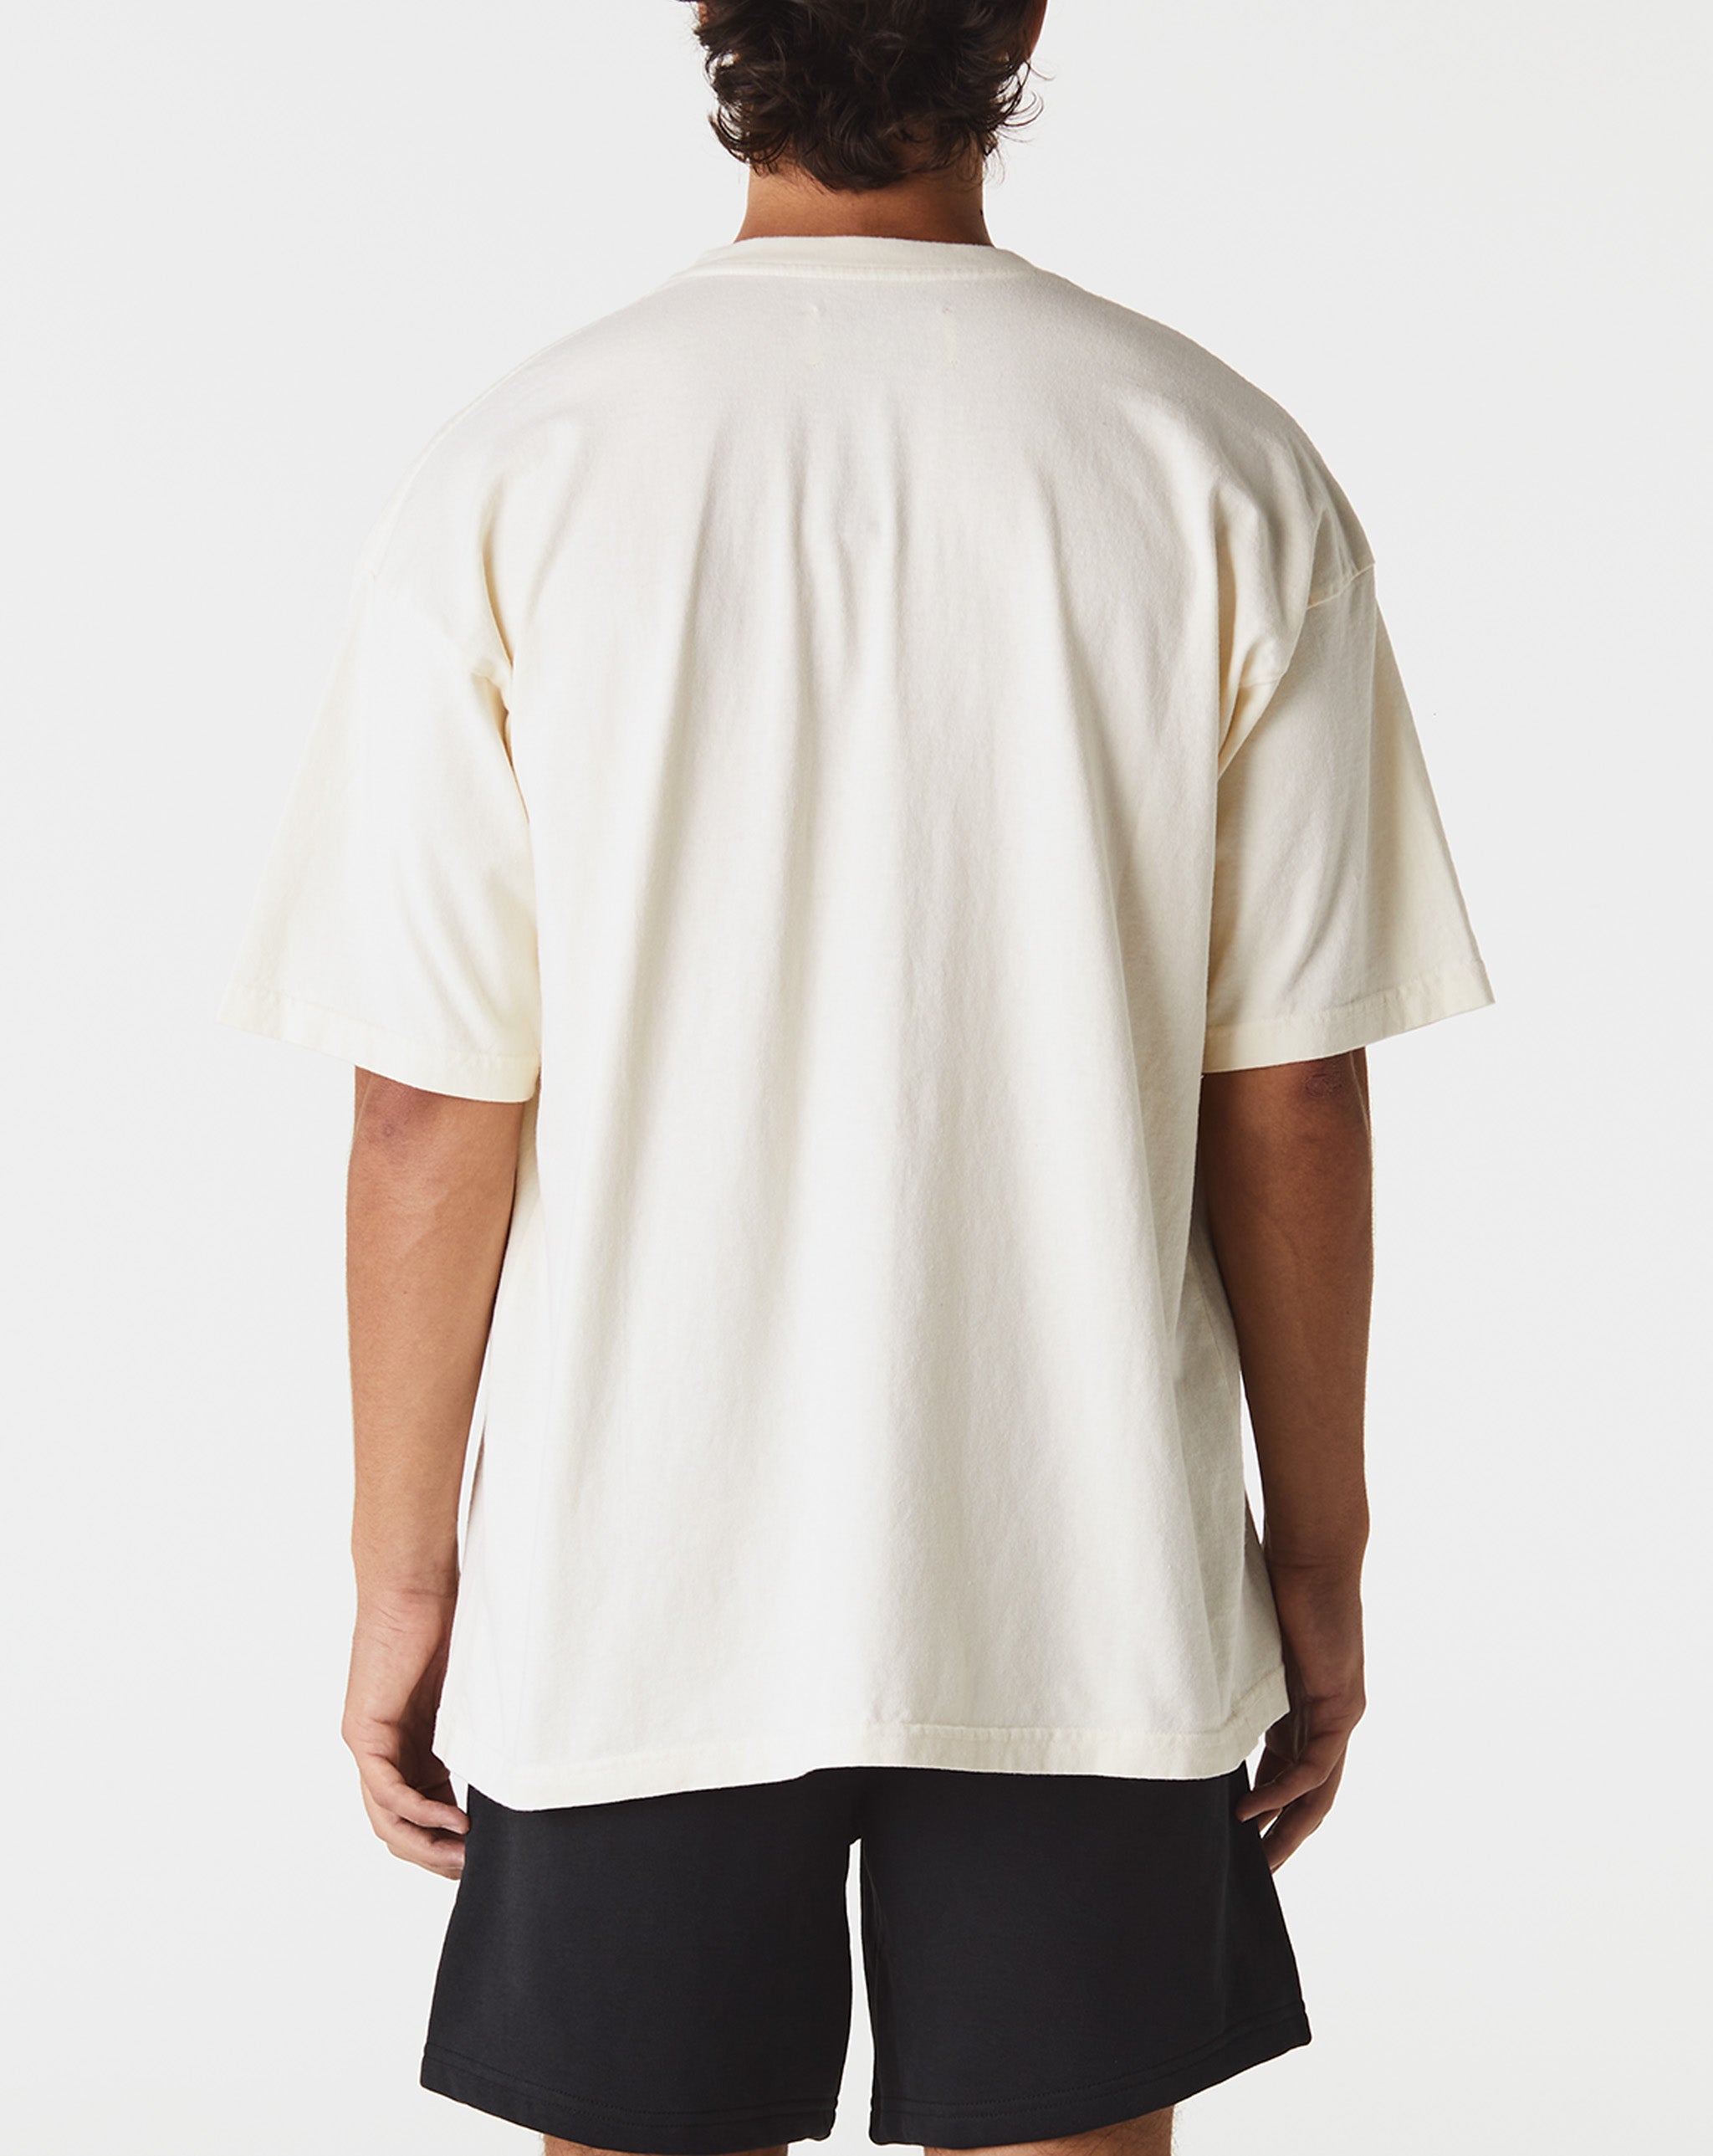 Satoshi Nakamoto Studded Logo T-Shirt  - XHIBITION